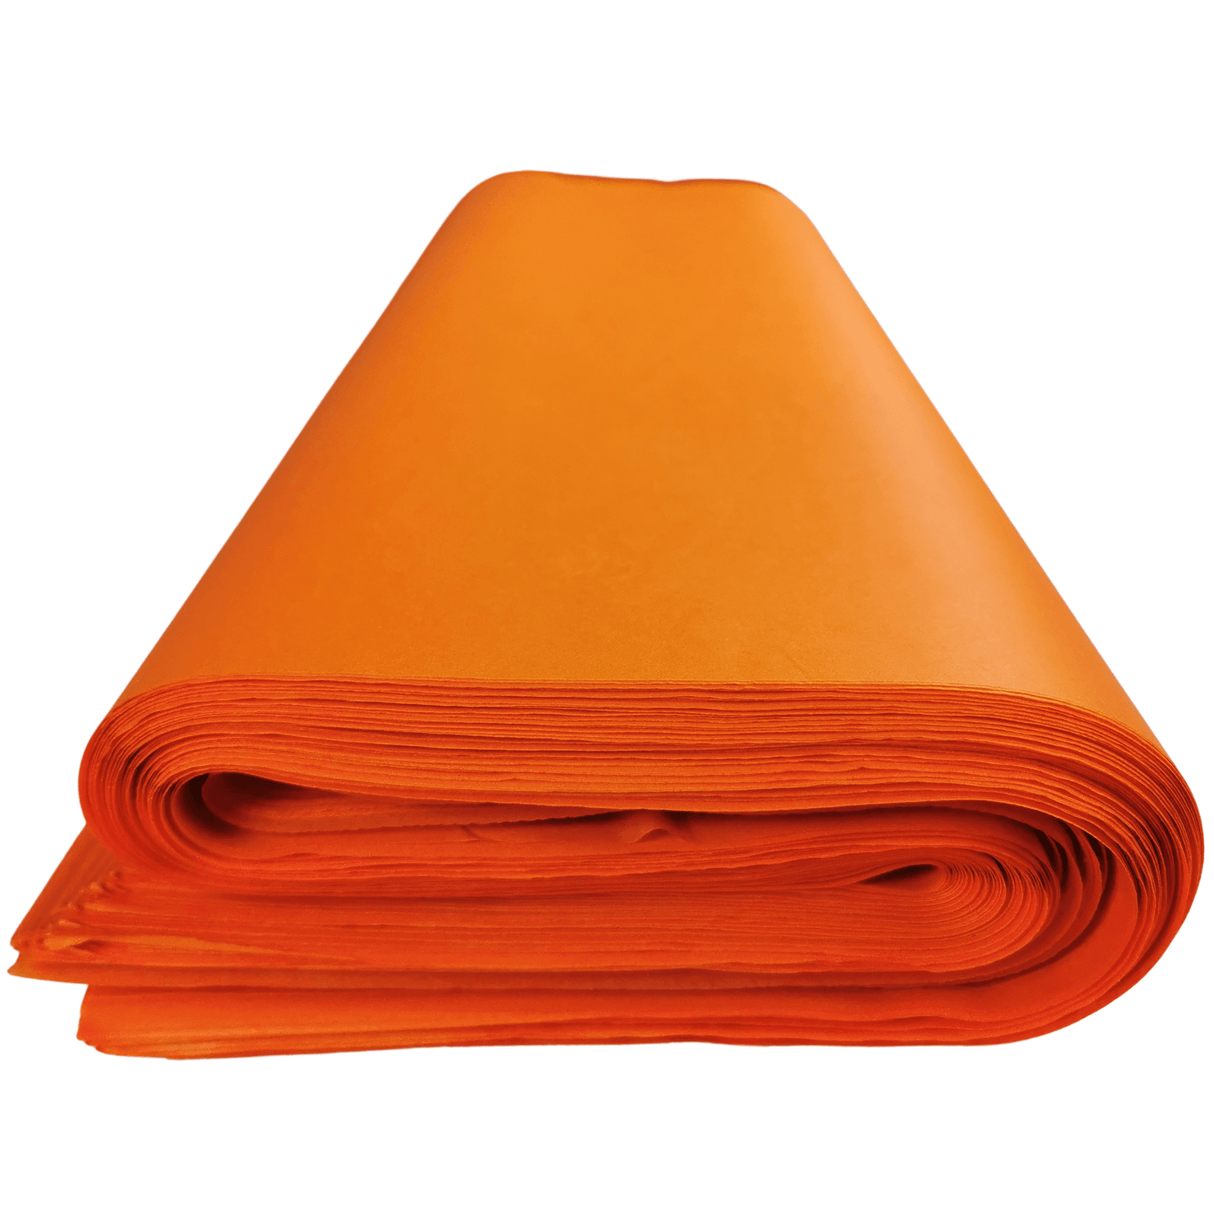 Orange Tissue Paper Rolled